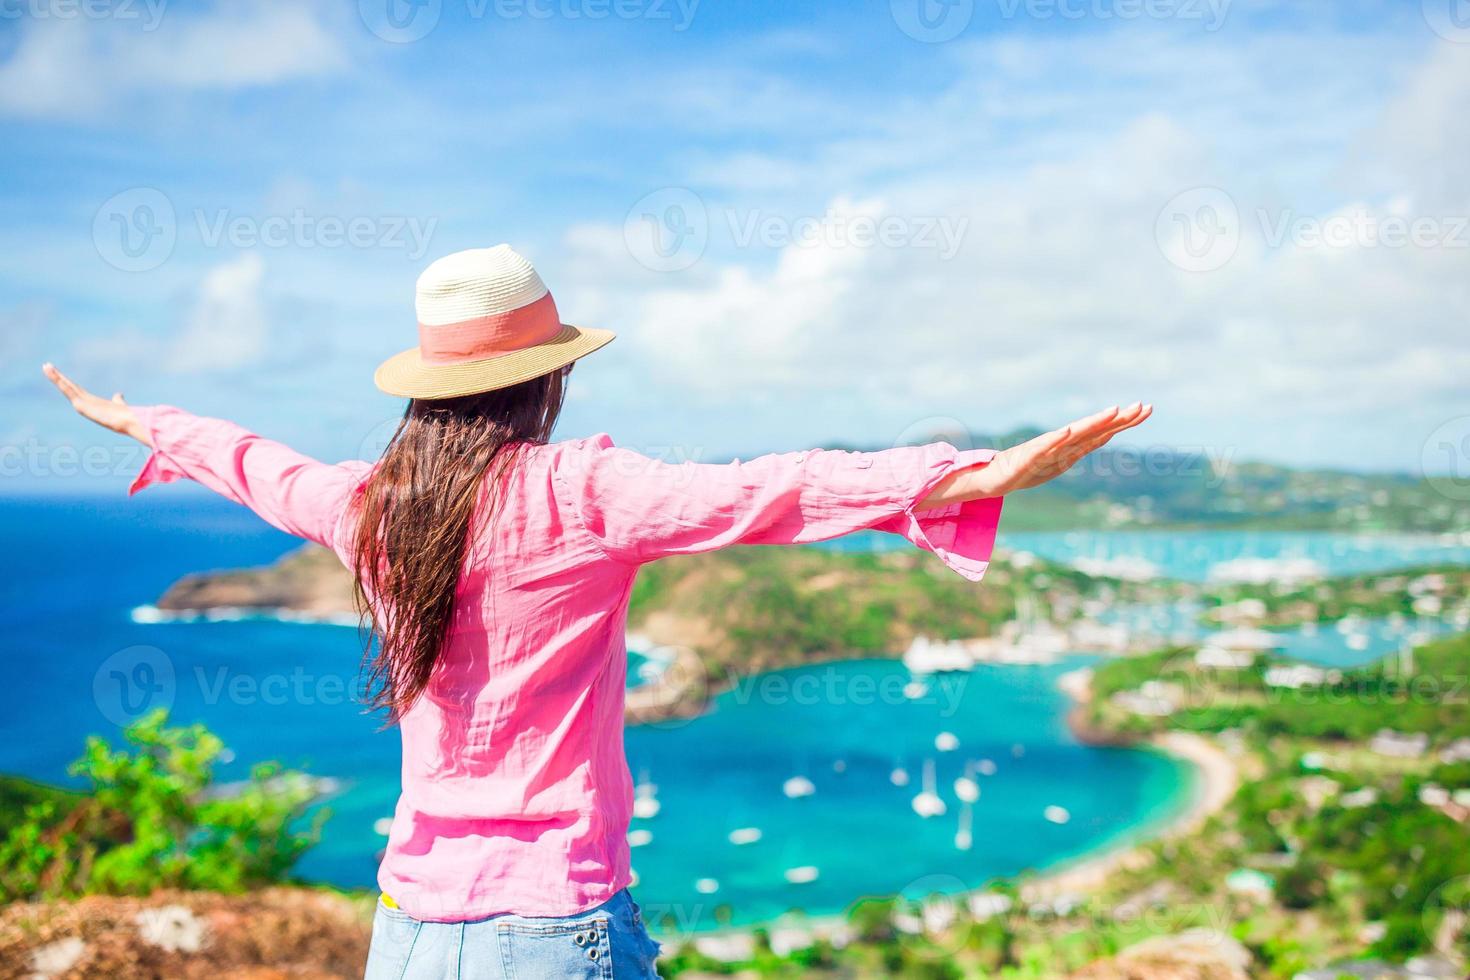 jong toerist vrouw met visie van Engels haven van shirley hoogtes, antigua, paradijs baai Bij tropisch eiland in de caraïben zee foto